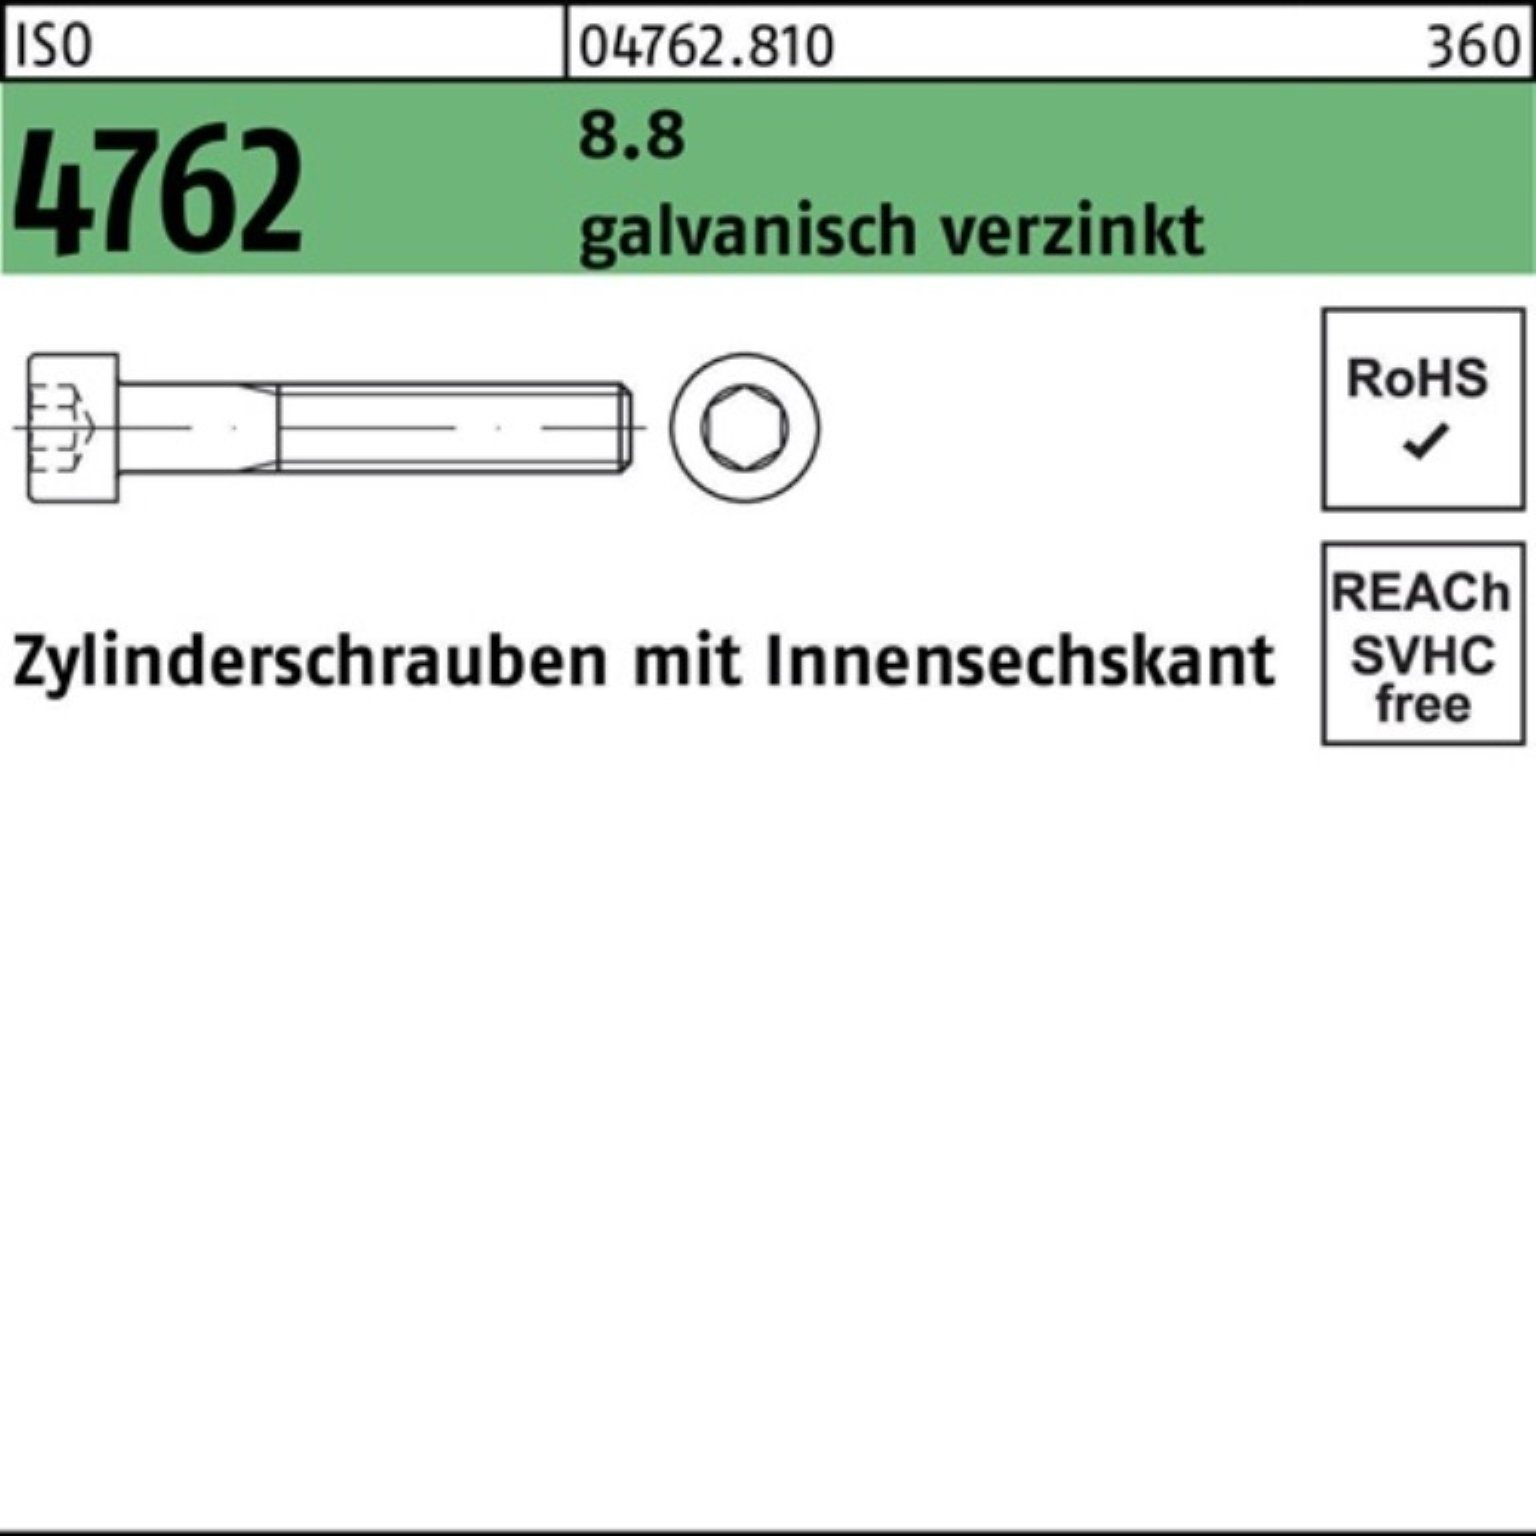 【auf Lager】 Reyher Zylinderschraube 100er Zylinderschraube galv.verz. 4762 8.8 ISO M24x210 Pack Innen-6kt